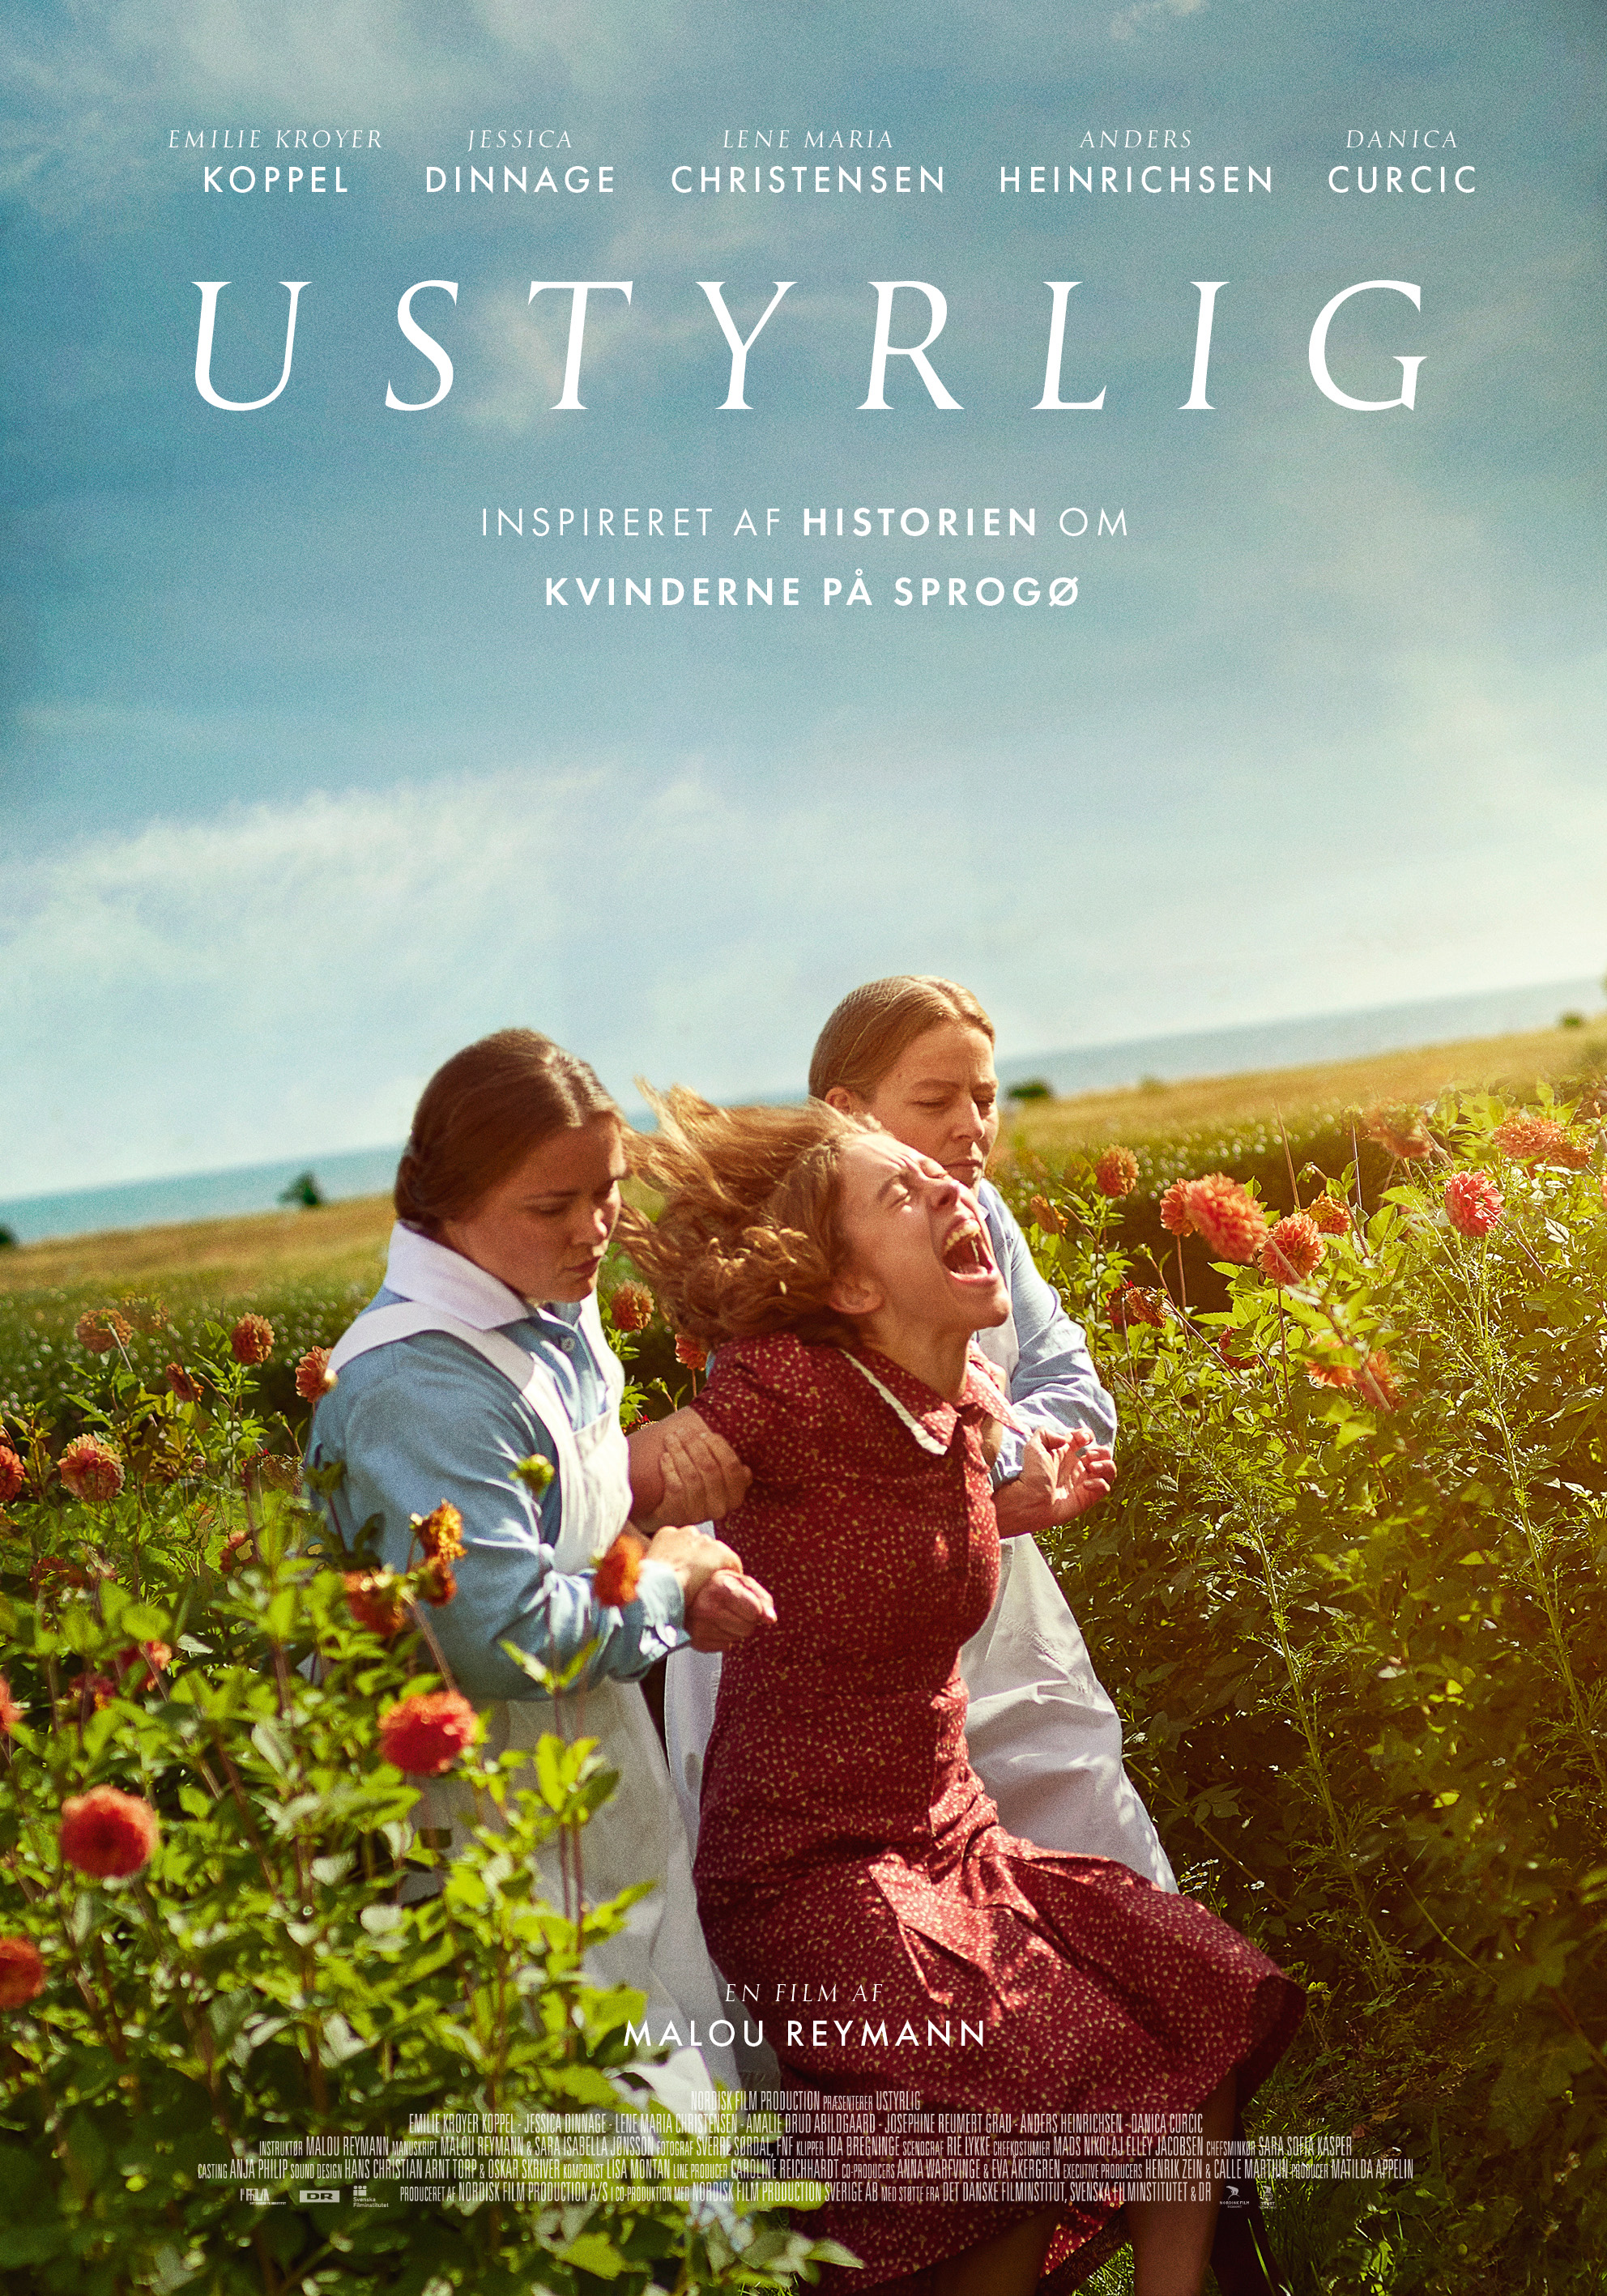 Esbjerg | Nordisk Film Biografer | Find de nyeste film her